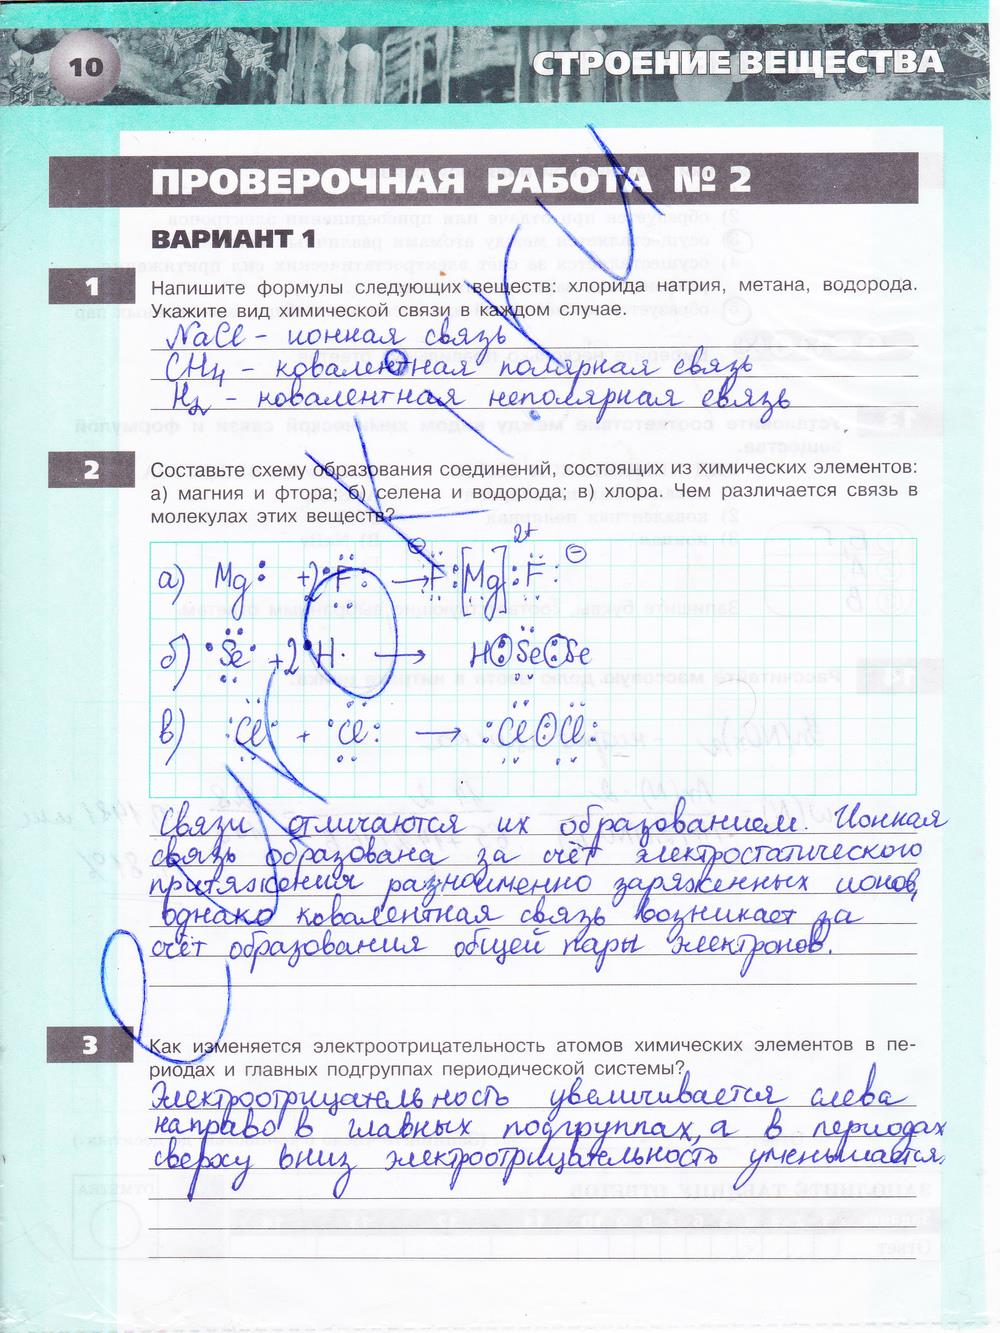 гдз 9 класс тетрадь-экзаменатор страница 10 химия Бобылева, Бирюлина